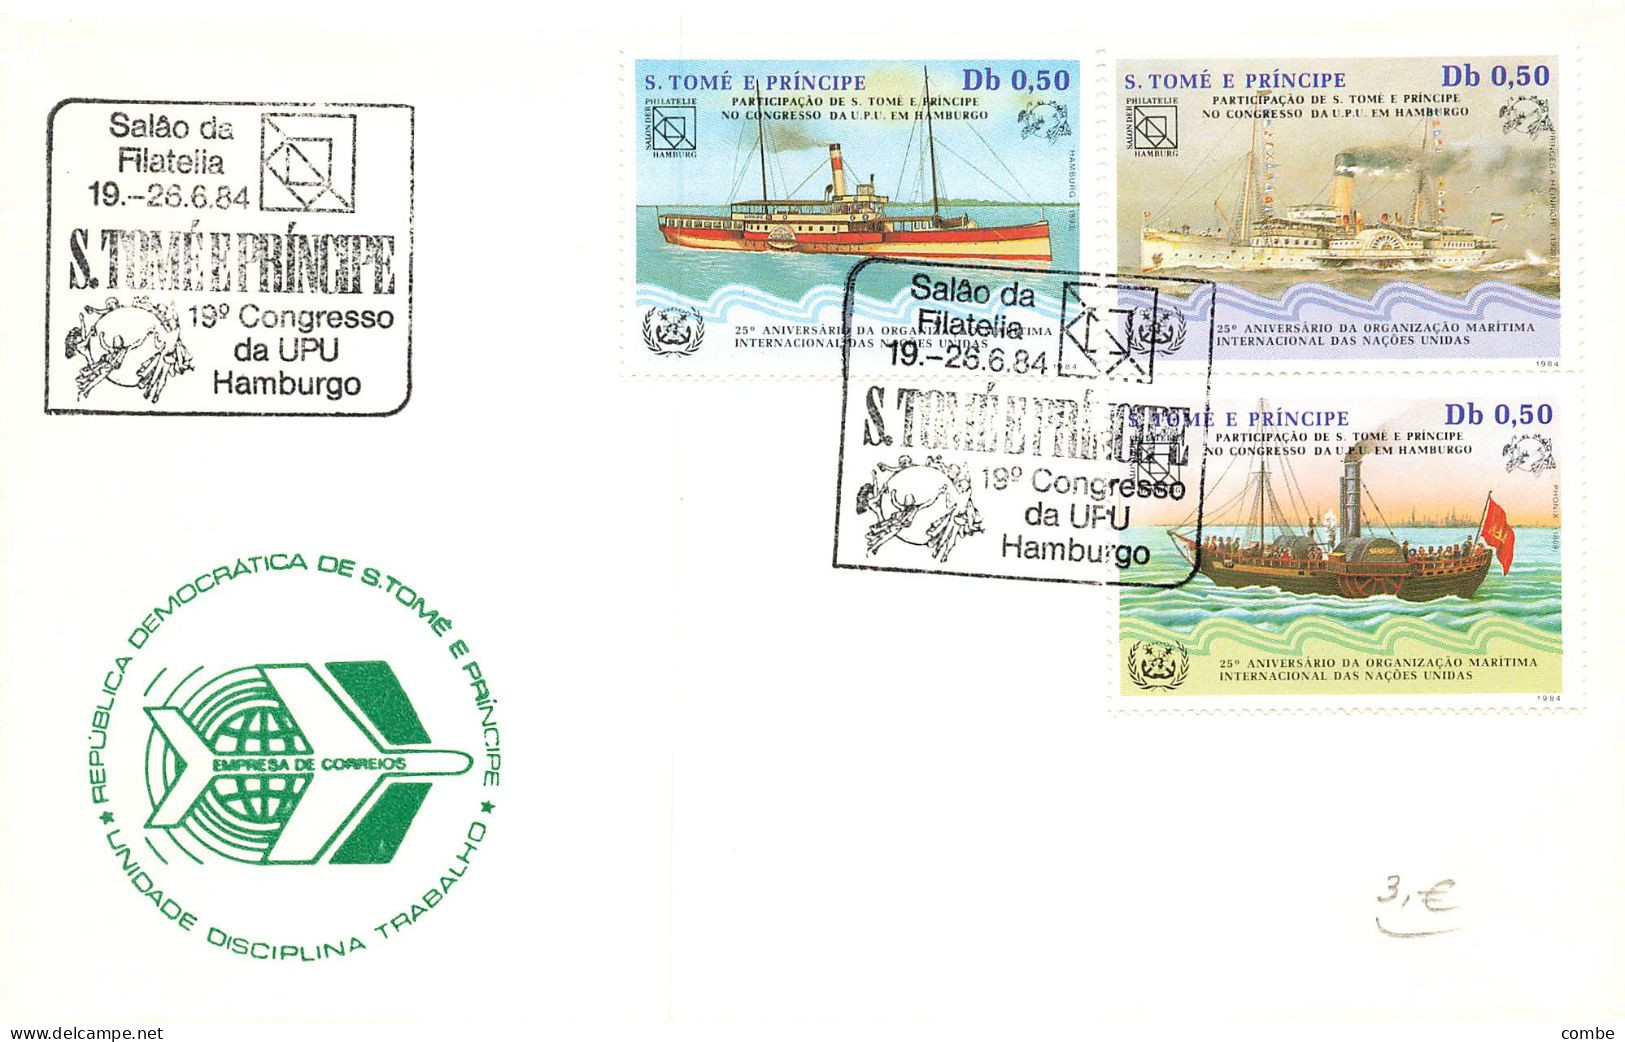 SAO TOME E PRINCIPE. 2 FDC. UPU 1984. SHIP - Iles Vièrges Britanniques